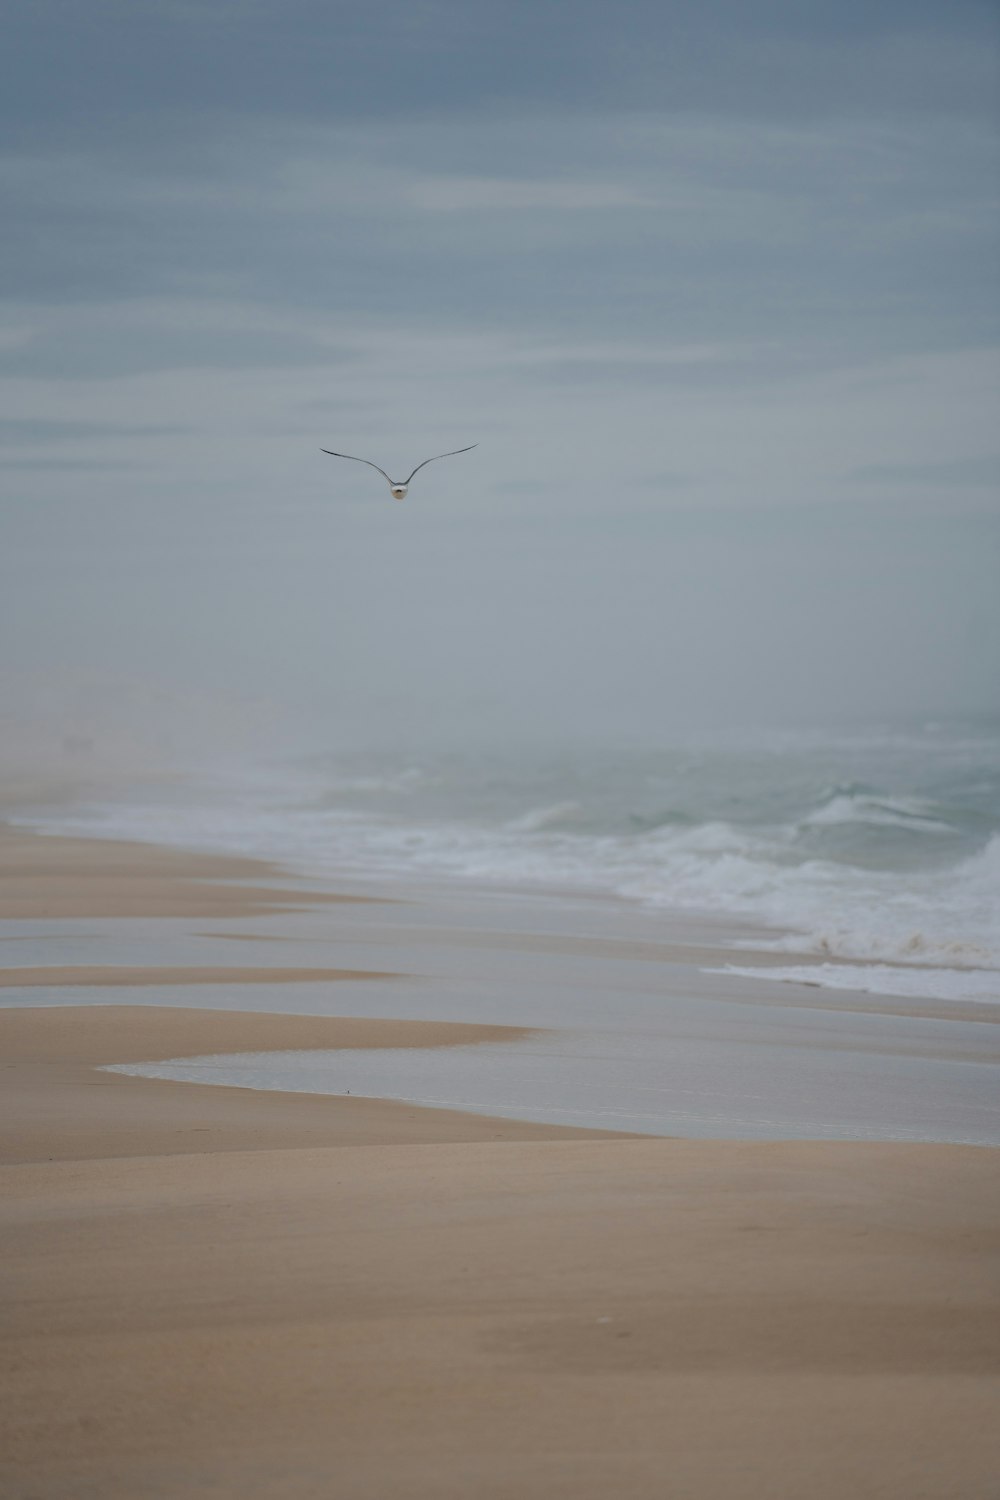 a seagull flying over a sandy beach on a foggy day